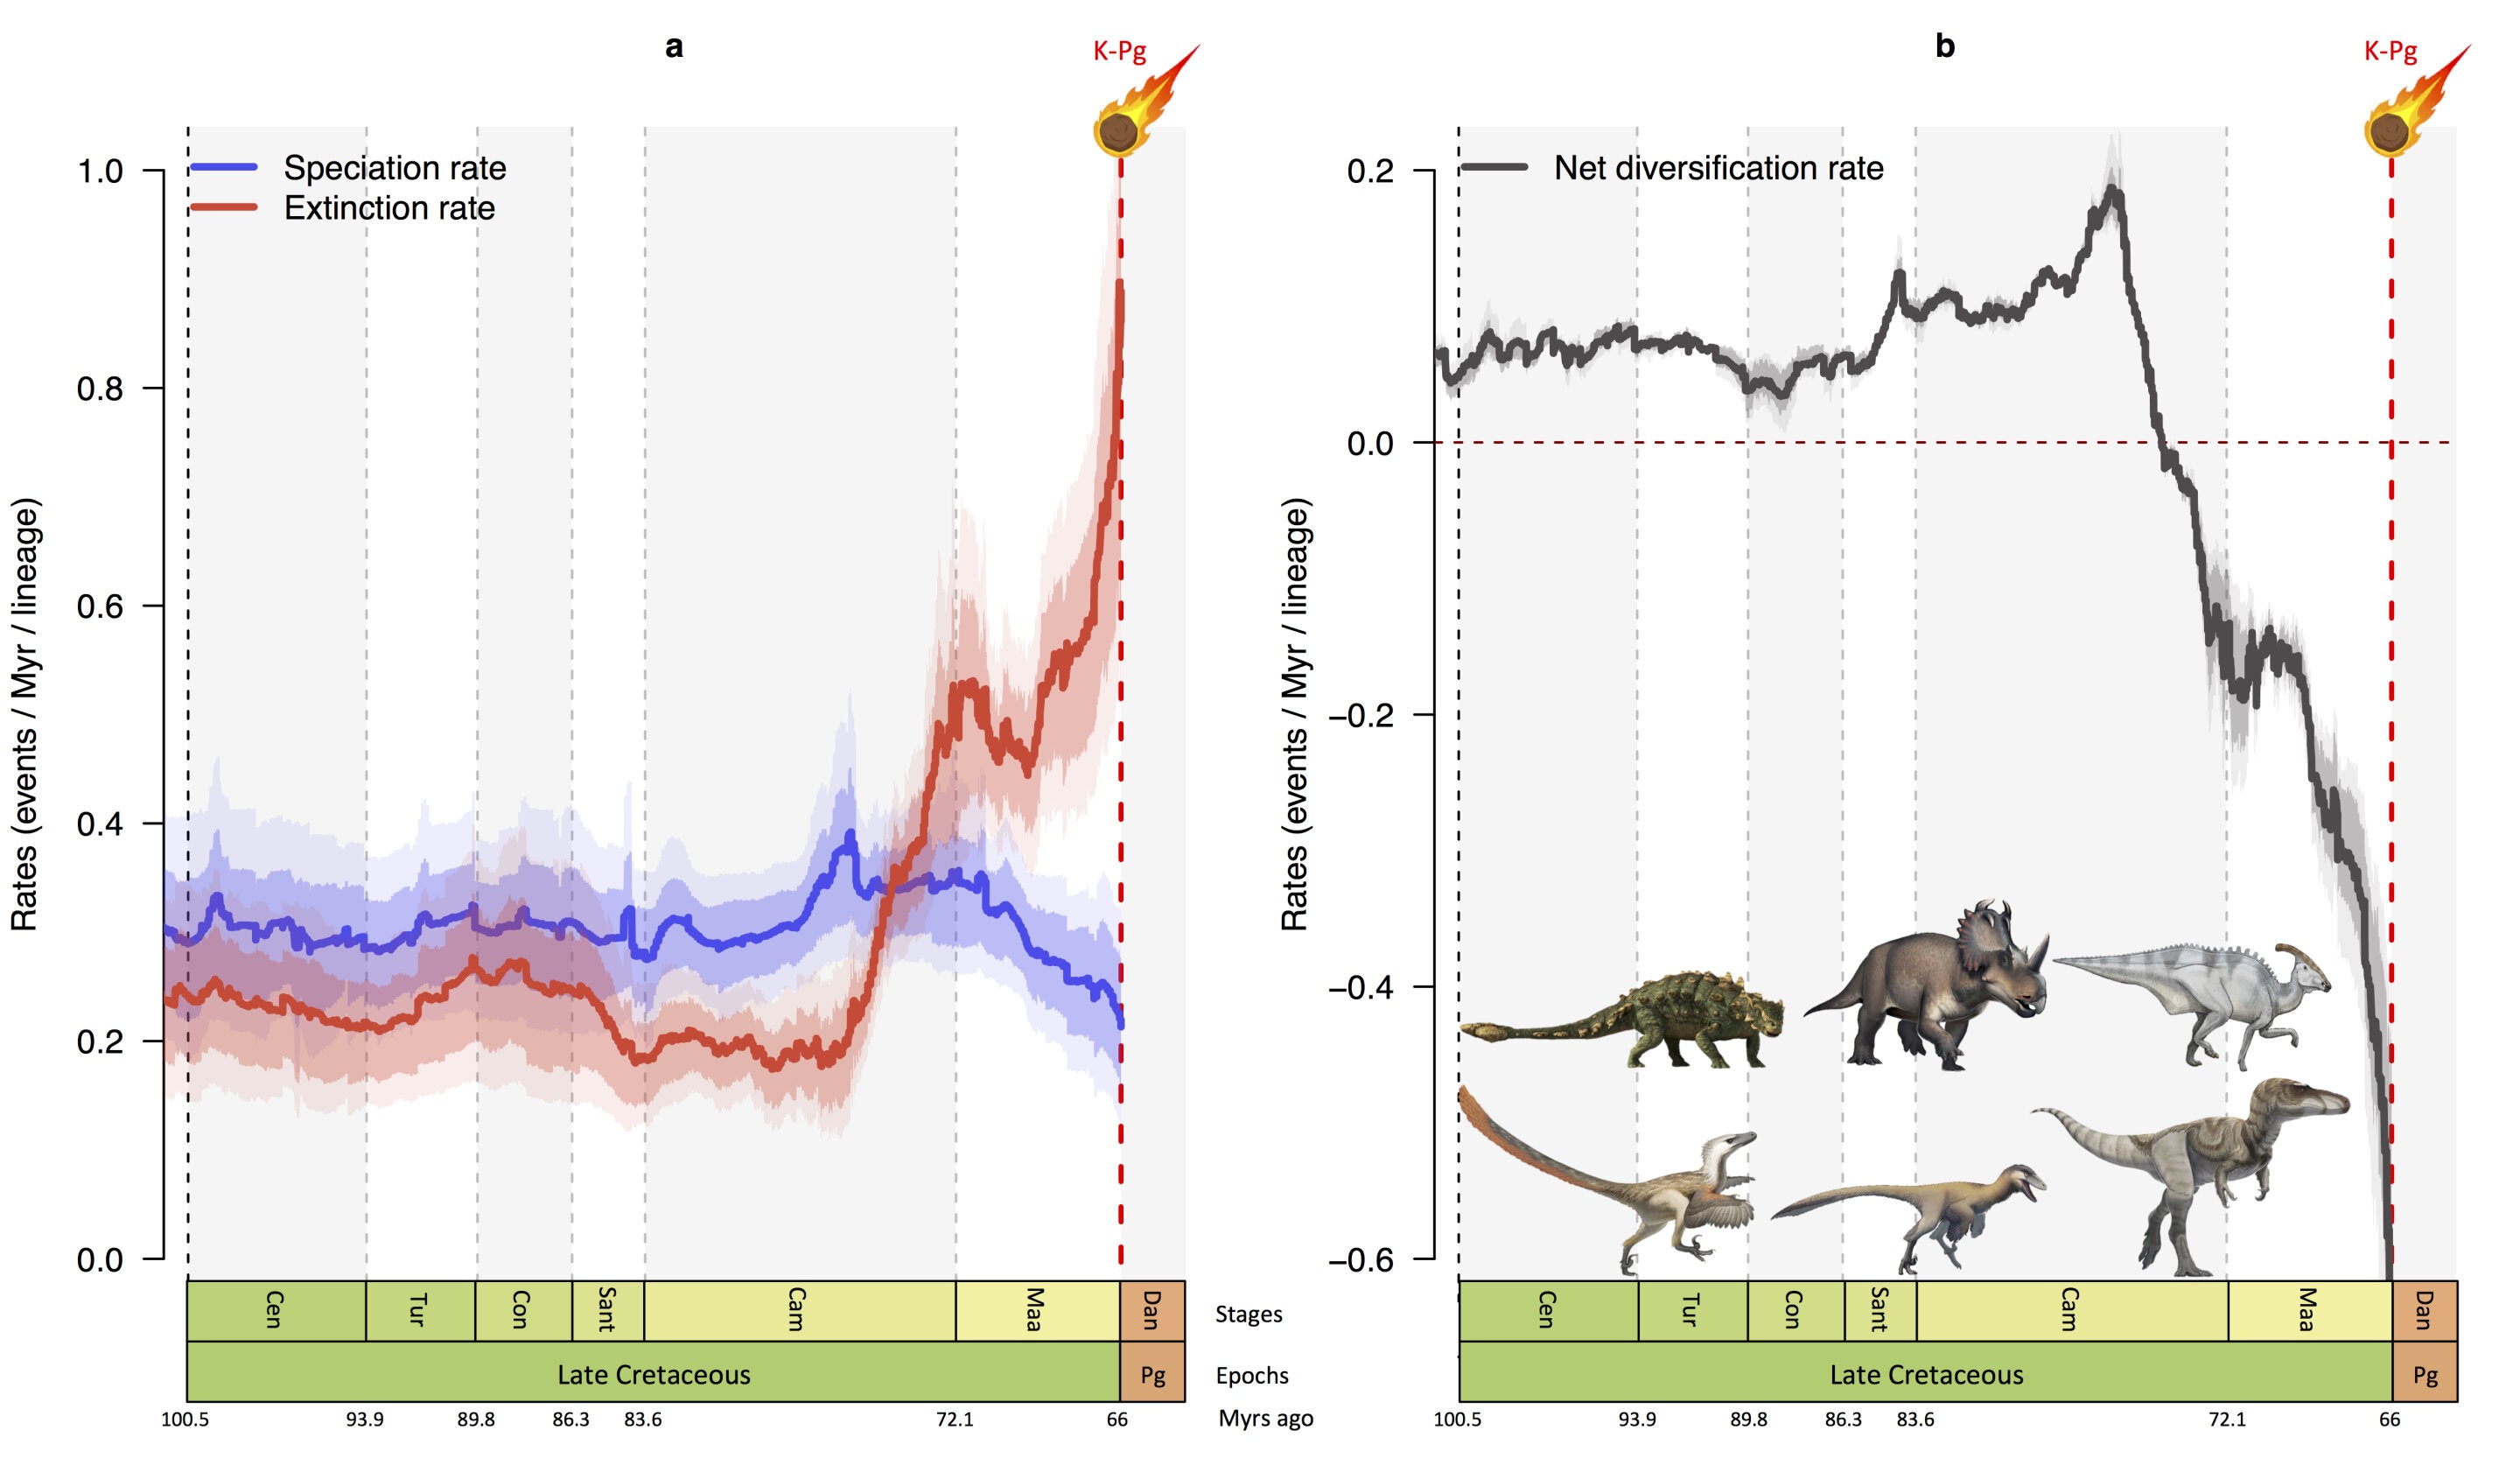 Dinossauros já estavam em declínio antes de extinção, sugere estudo (Foto: Fabien L. Condamine)